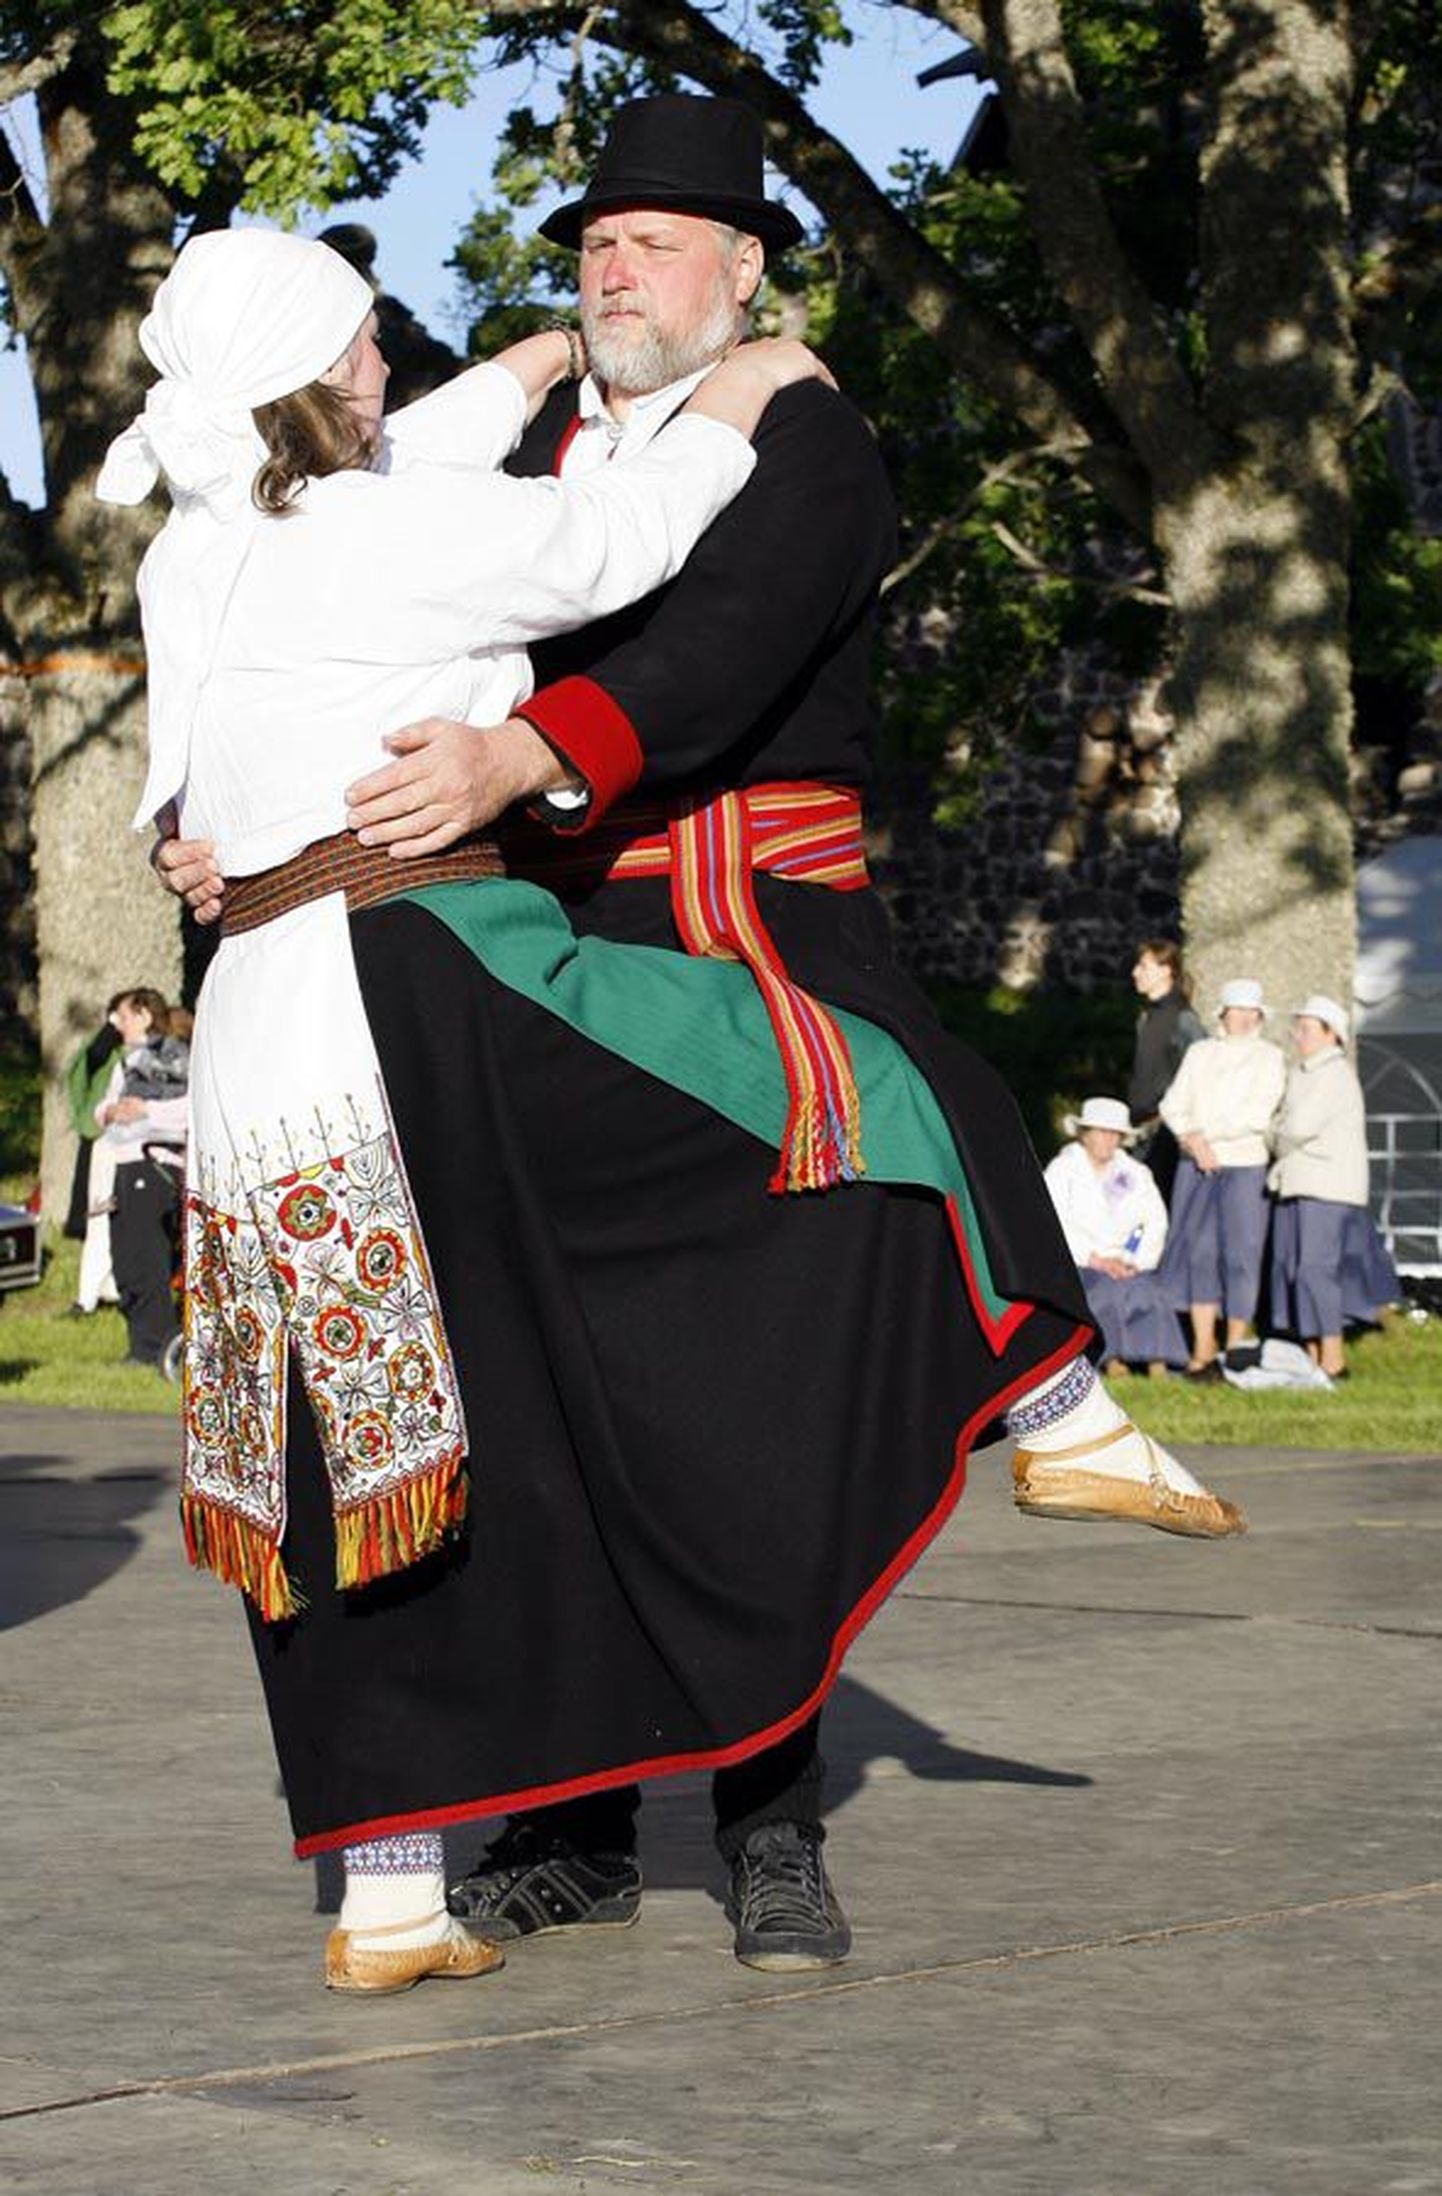 Esimene Mulgimaa uhkuse auhinna saaja kuulutatakse välja teisel Mulgi peol Tõrvas. Fotol on tantsijad esimeselt Mulgi peolt, mis peeti Karksis.